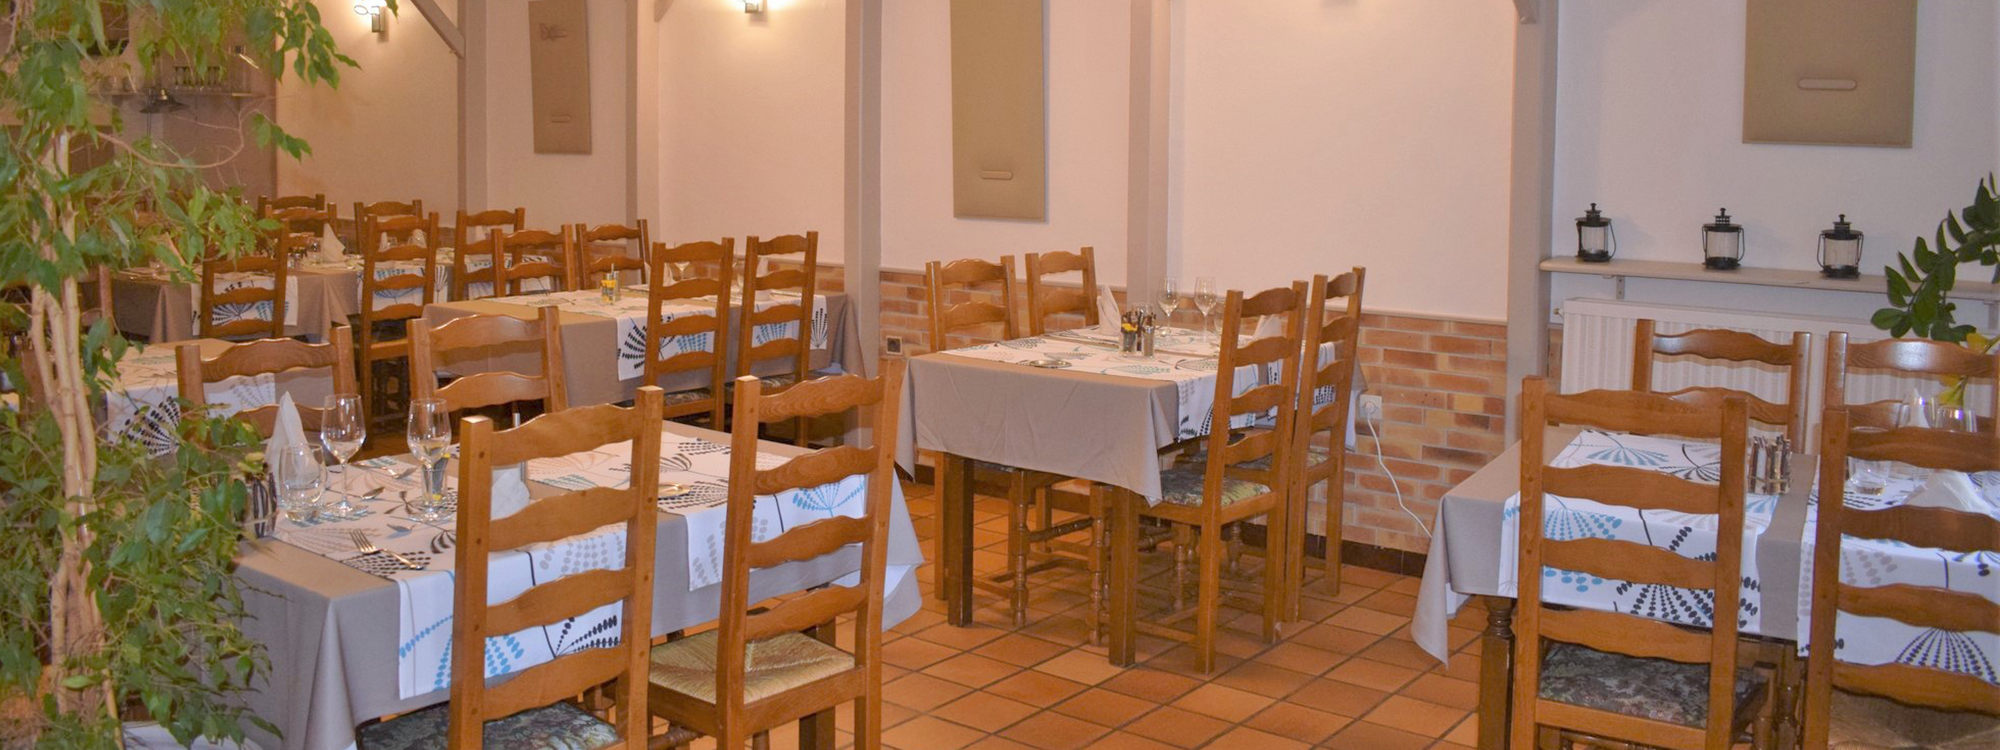 Salle du restaurant, Auberge du Cheval Blanc